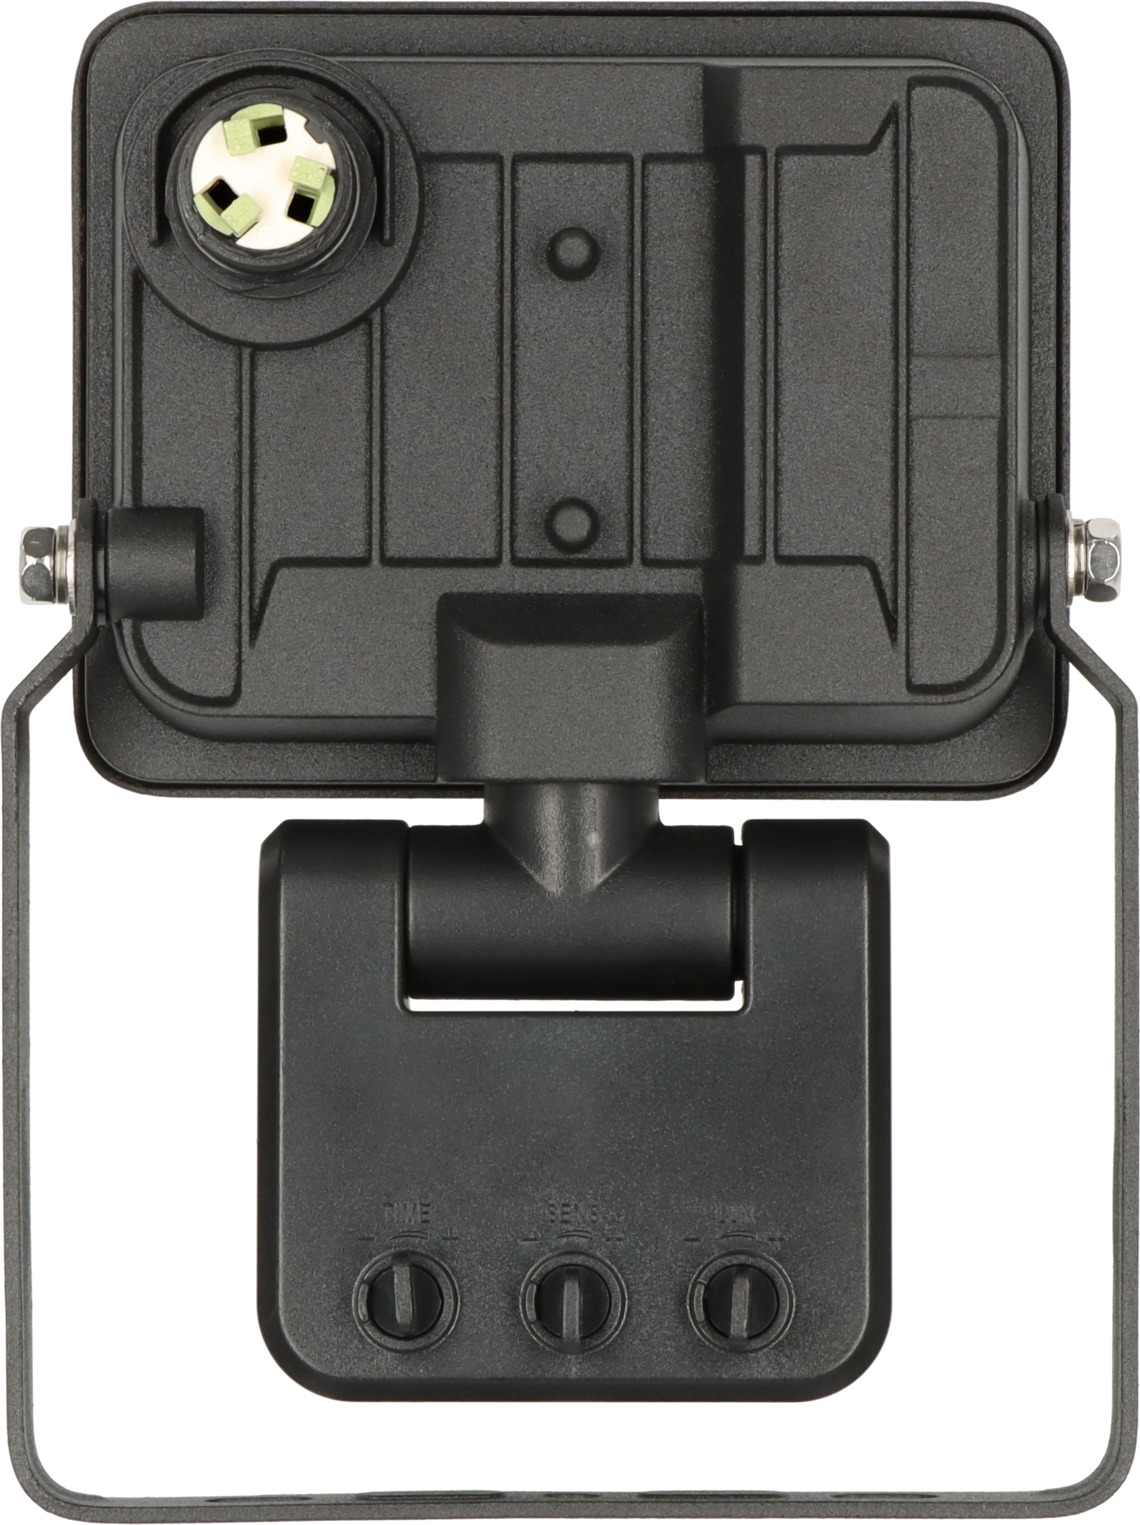 LED Strahler JARO 1060 | P Infrarot-Bewegungsmelder, brennenstuhl® 1150lm, mit IP65 10W